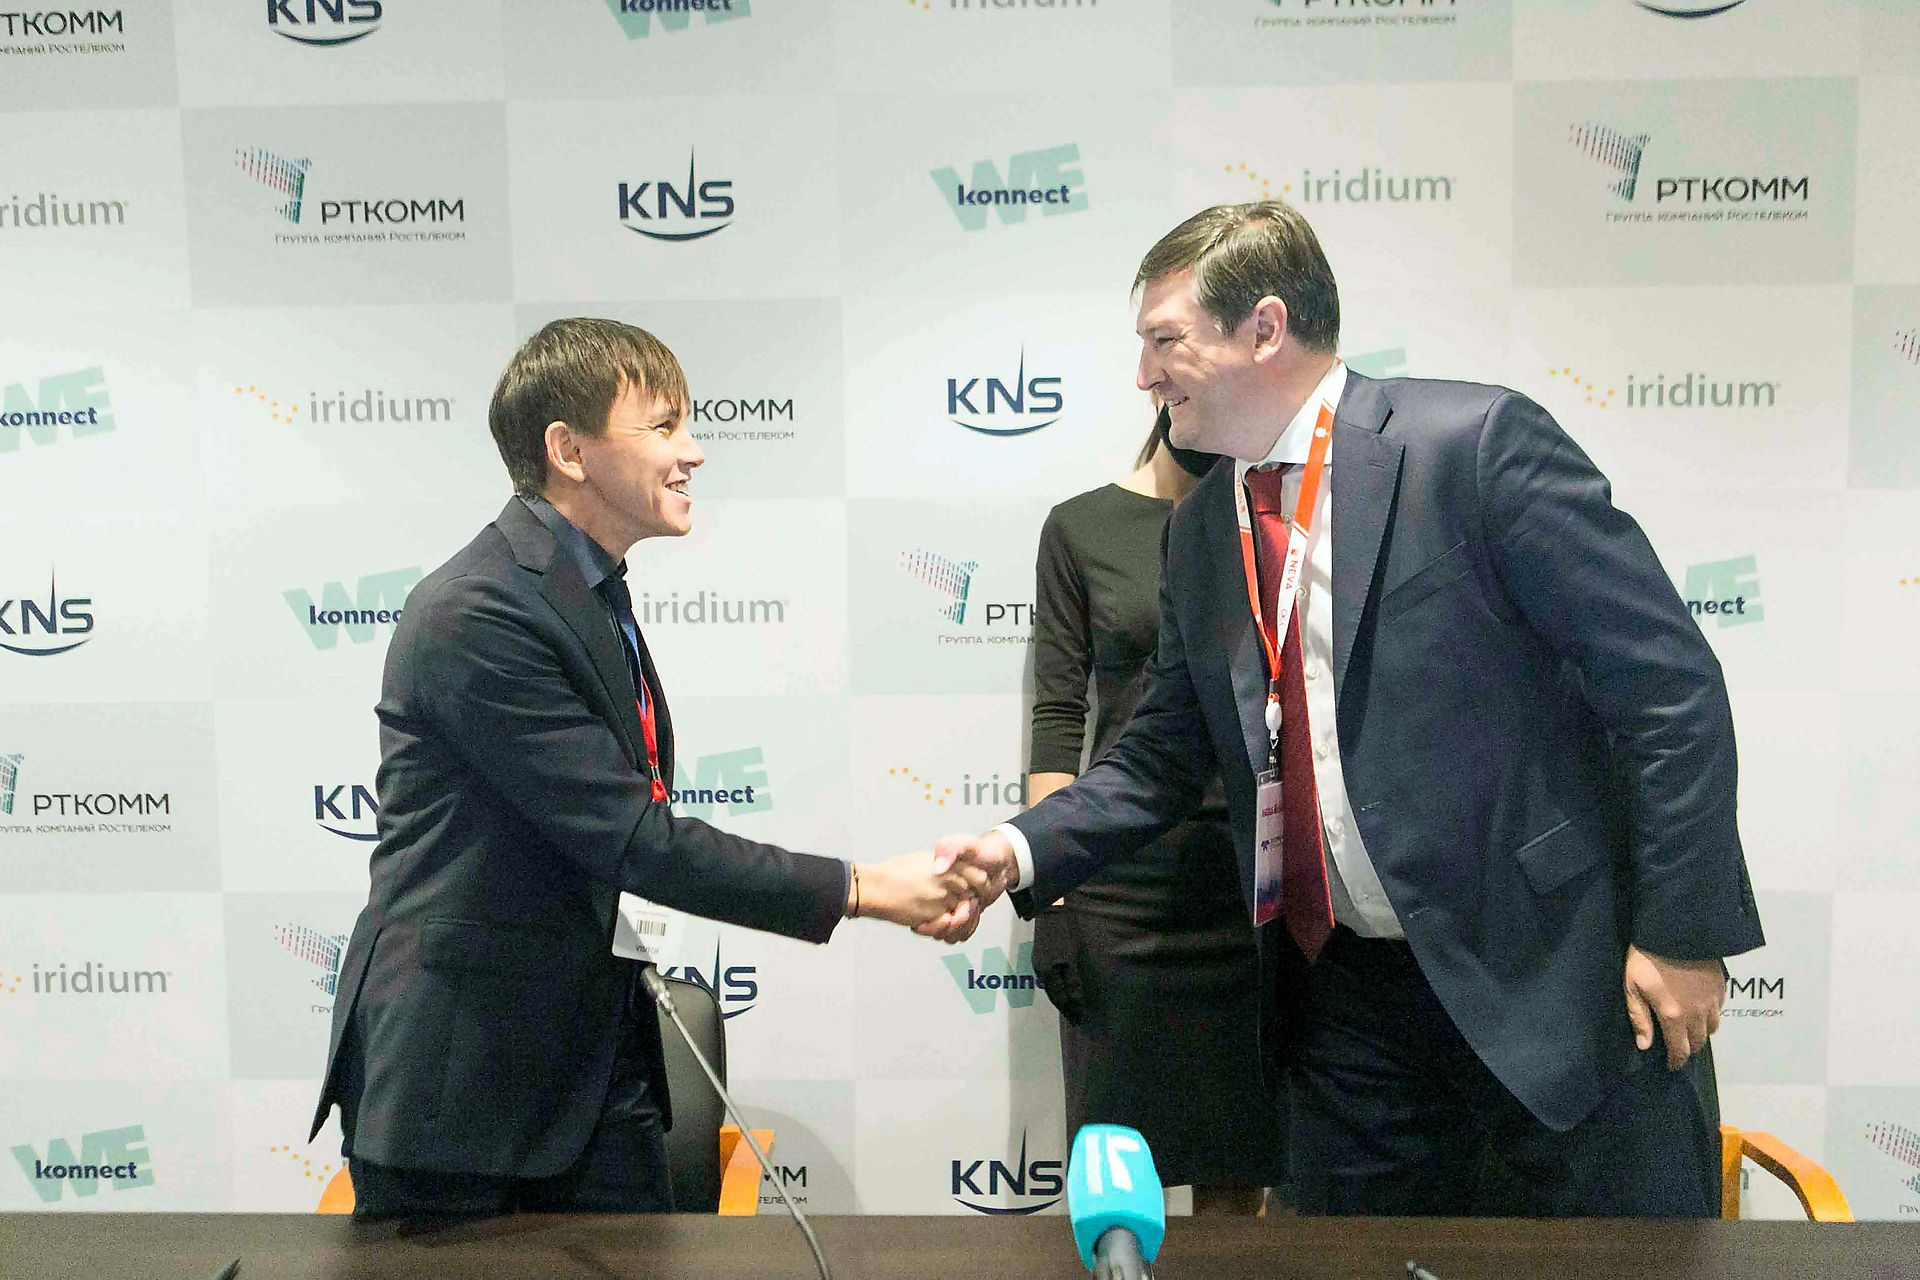 Глава KNS Inc Кевин Джин участвовал в мероприятии онлайн, на конференции присутствовал его российский коллега Ильдар Вахитов